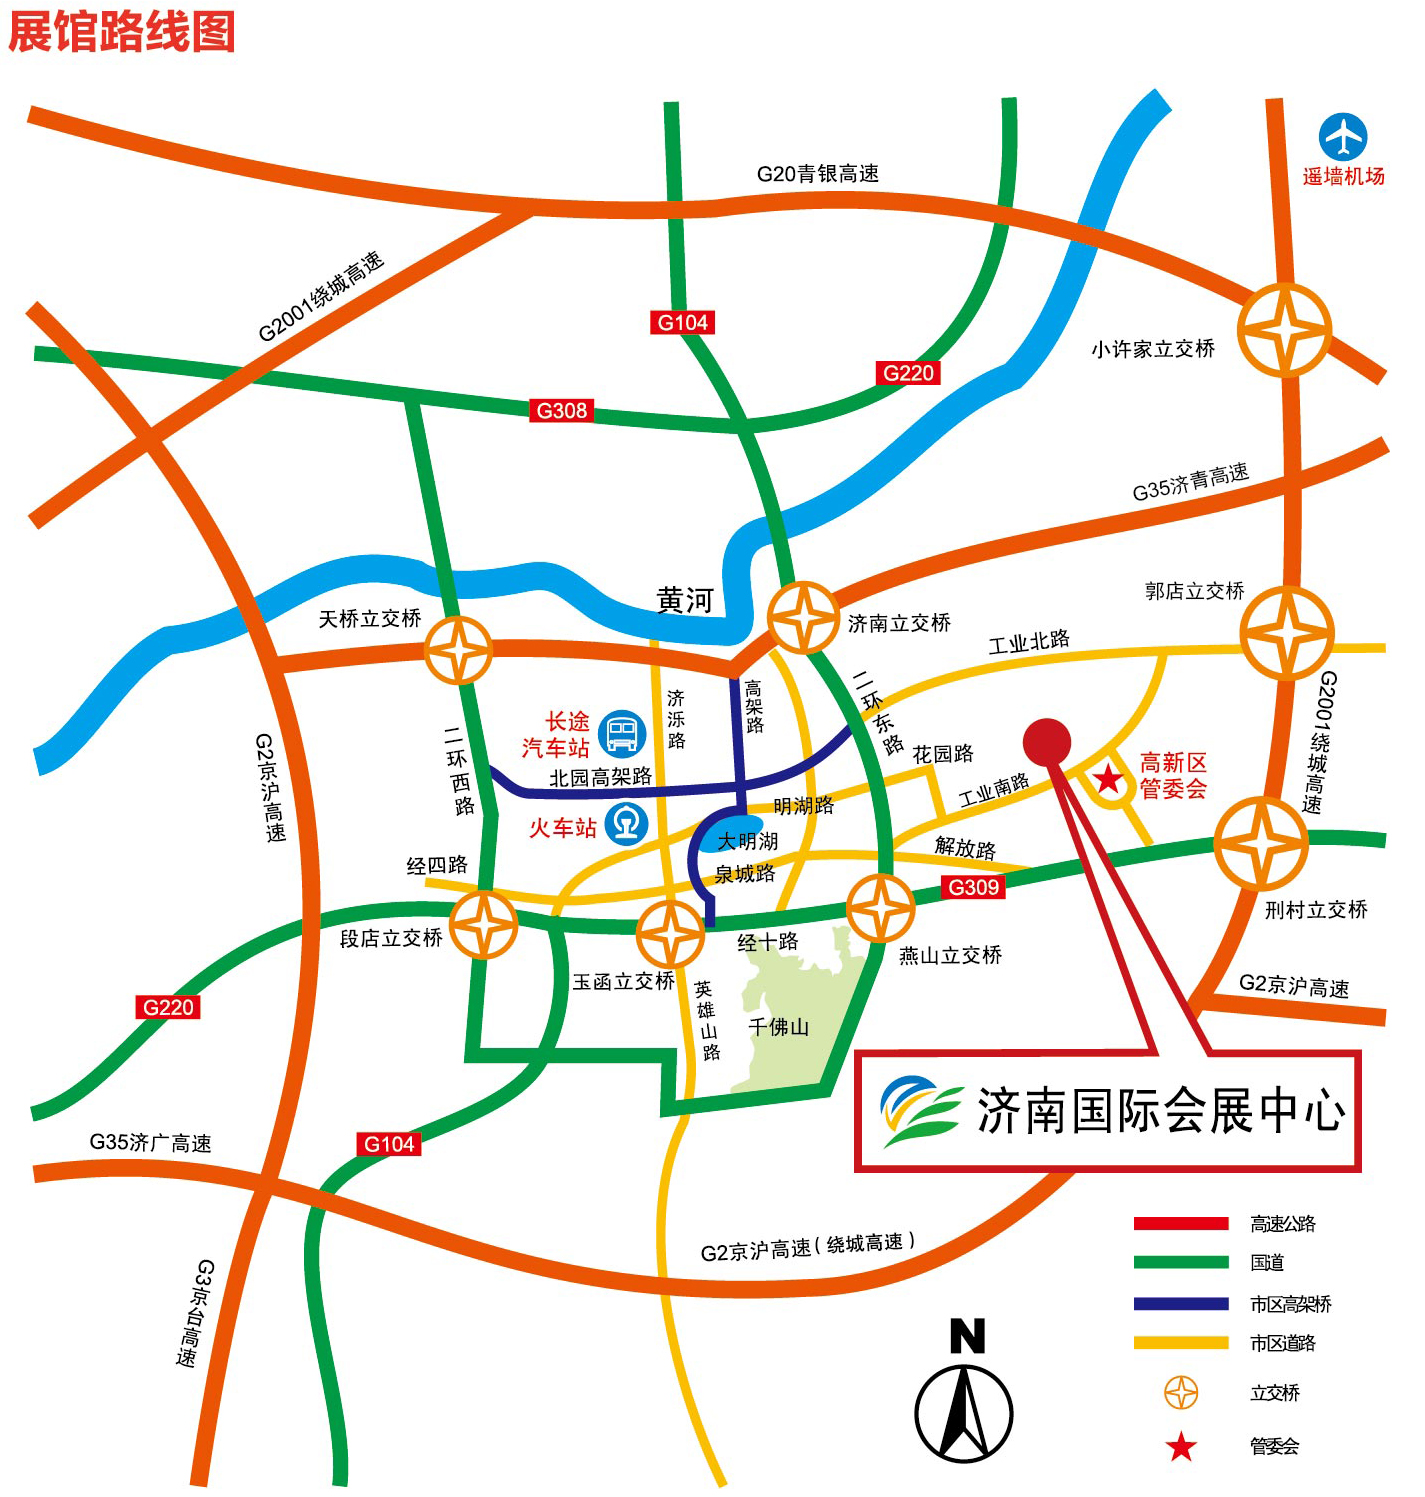 济南火车站会展中心 方案一:乘坐brt5号线,至"工业南路西口"